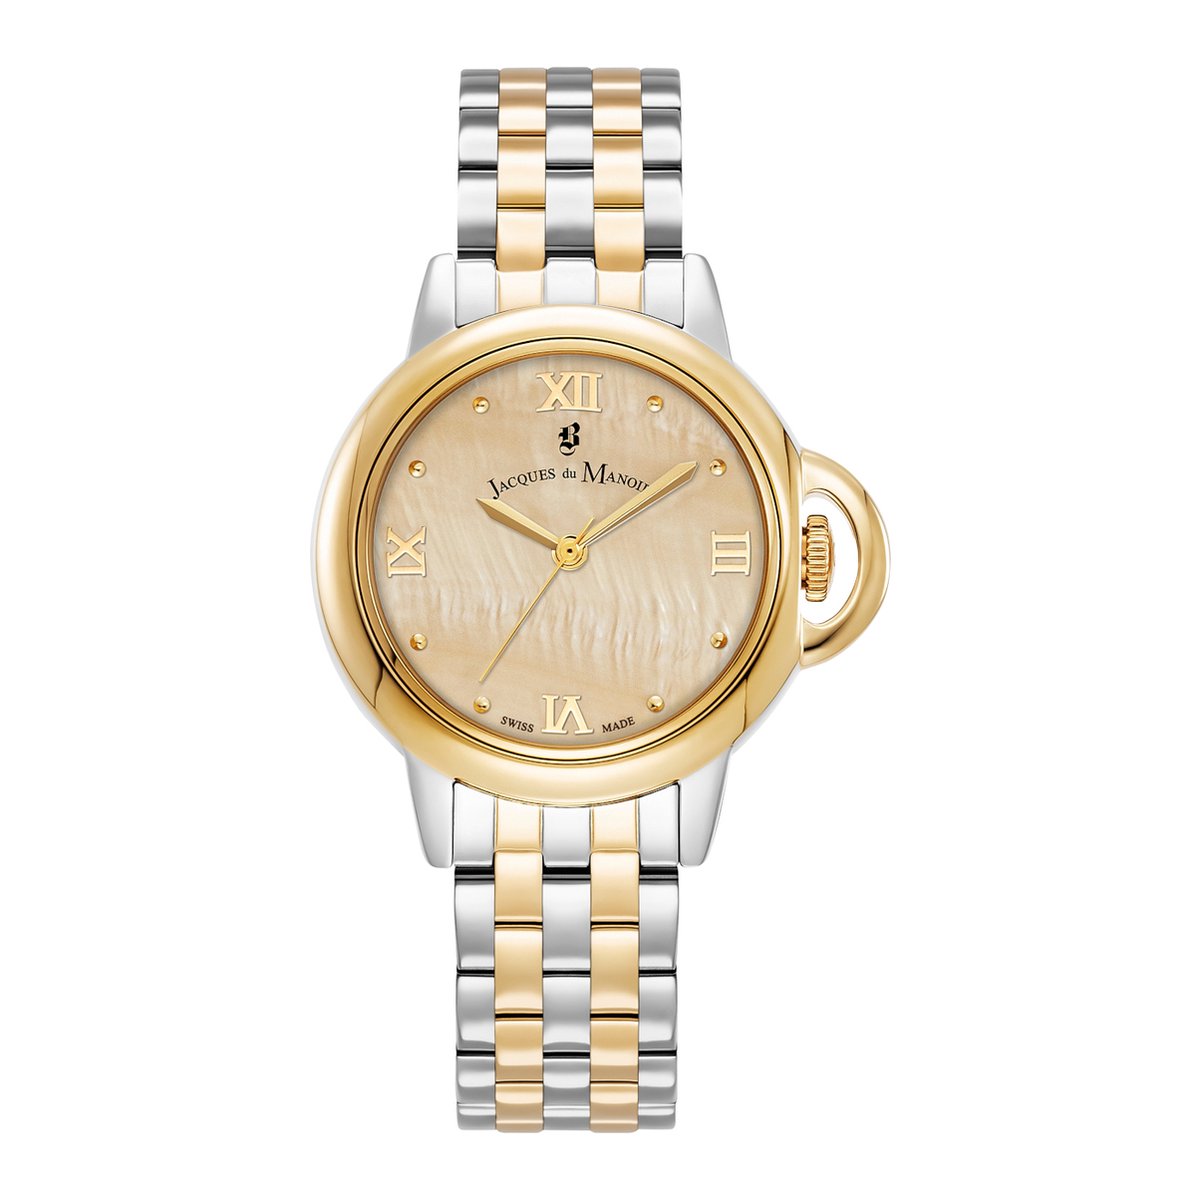 Jacques de Monoir Horloge JWL02502 Staal Bi-color met Gouden Wijzerplaat 32mm